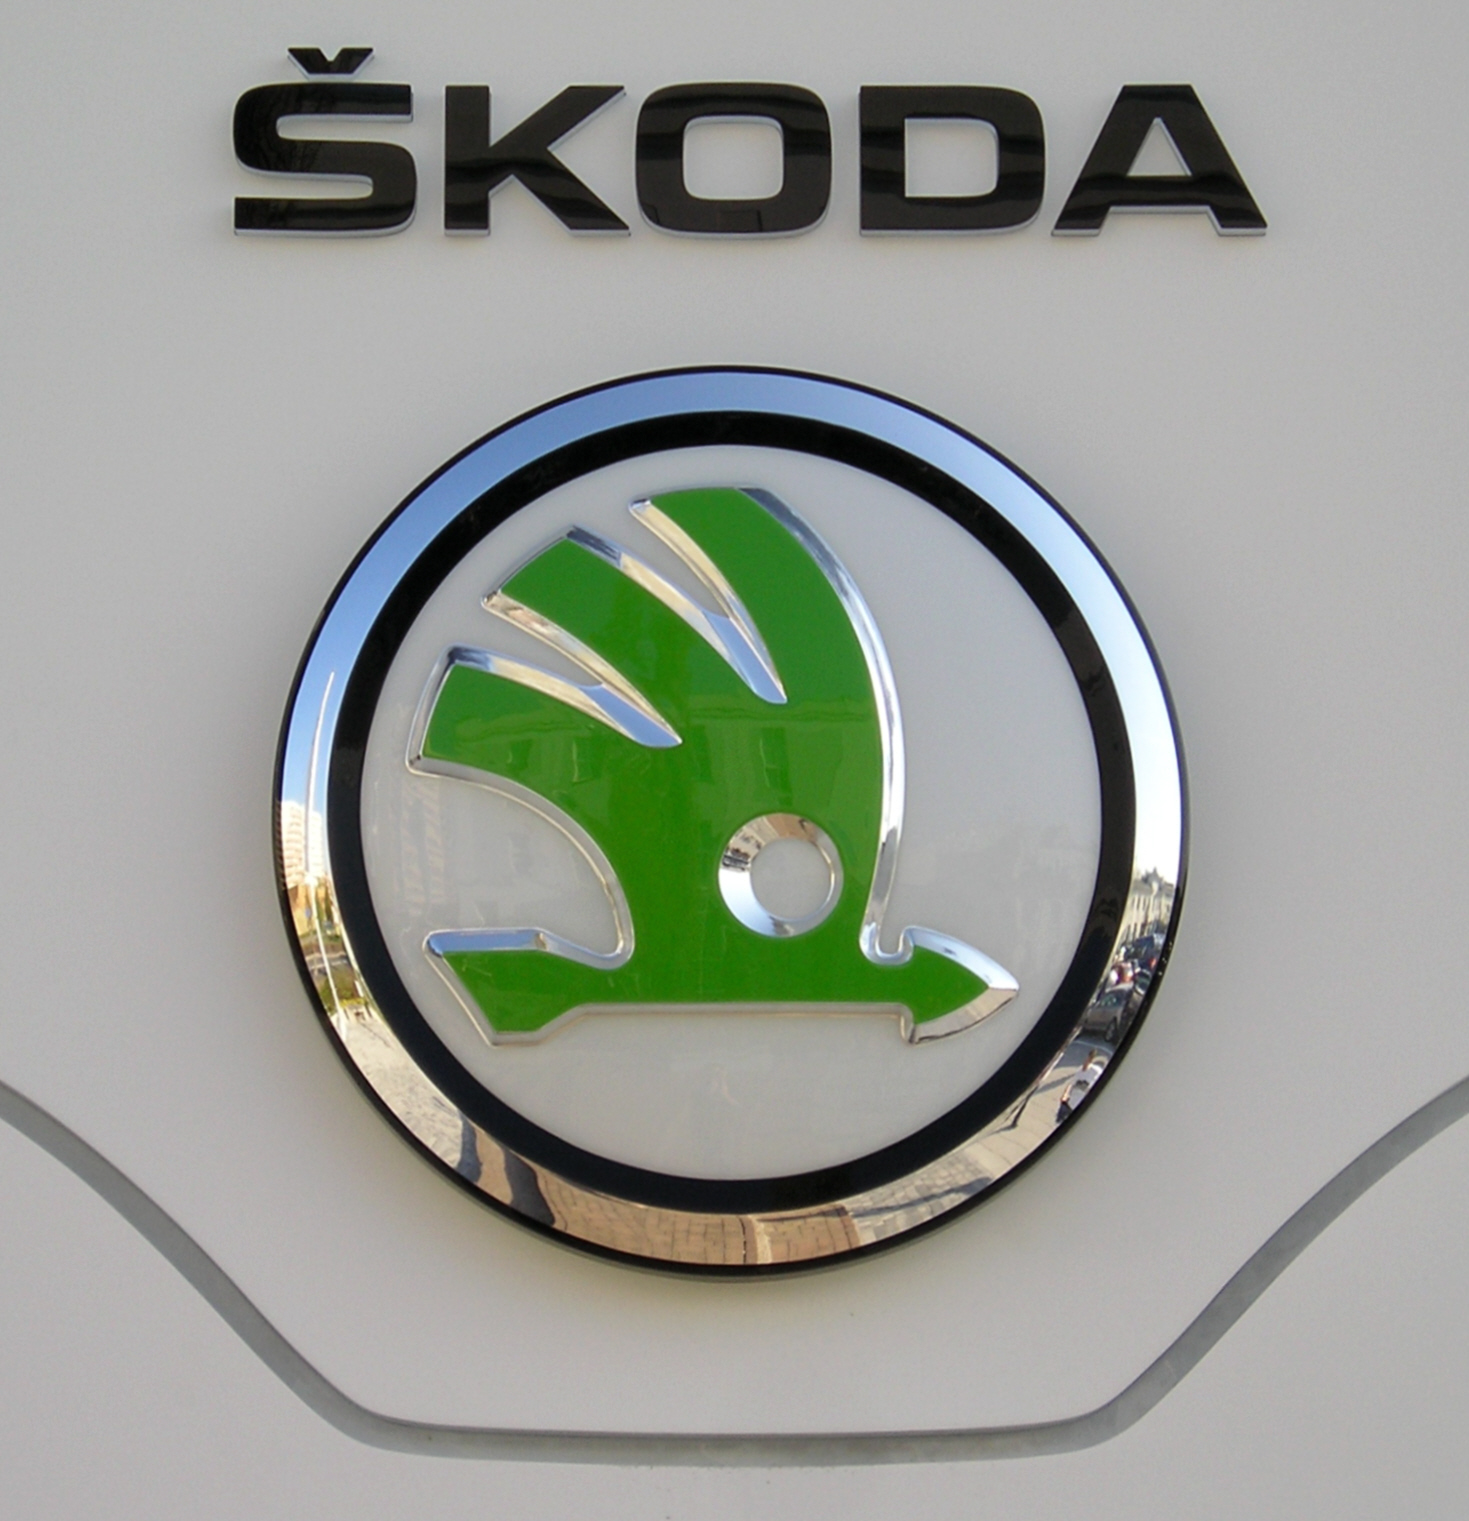 Skoda Emblem Wallpaper